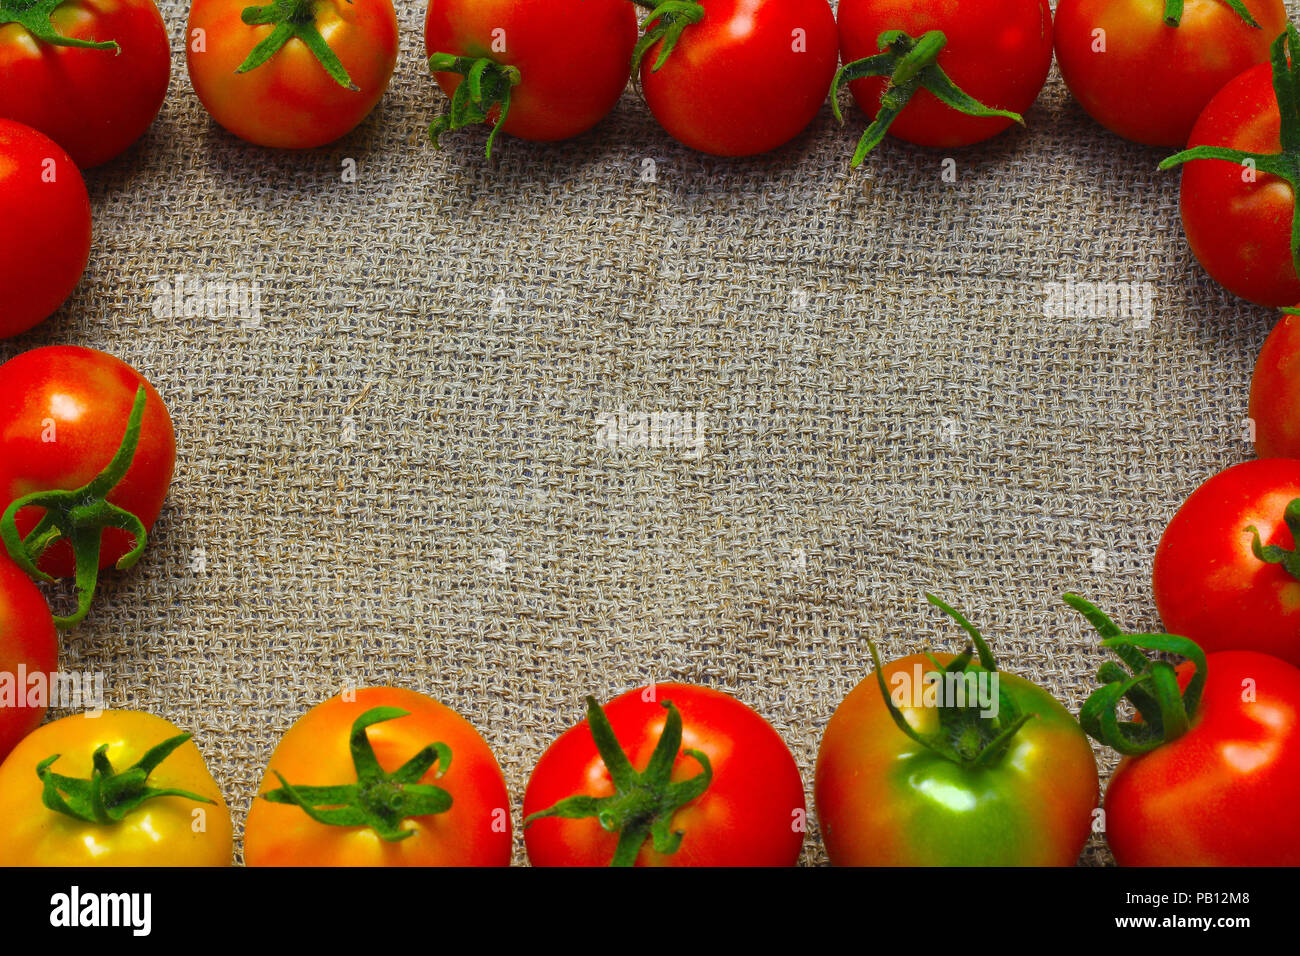 Fresh ripe red tomatoes Stock Photo